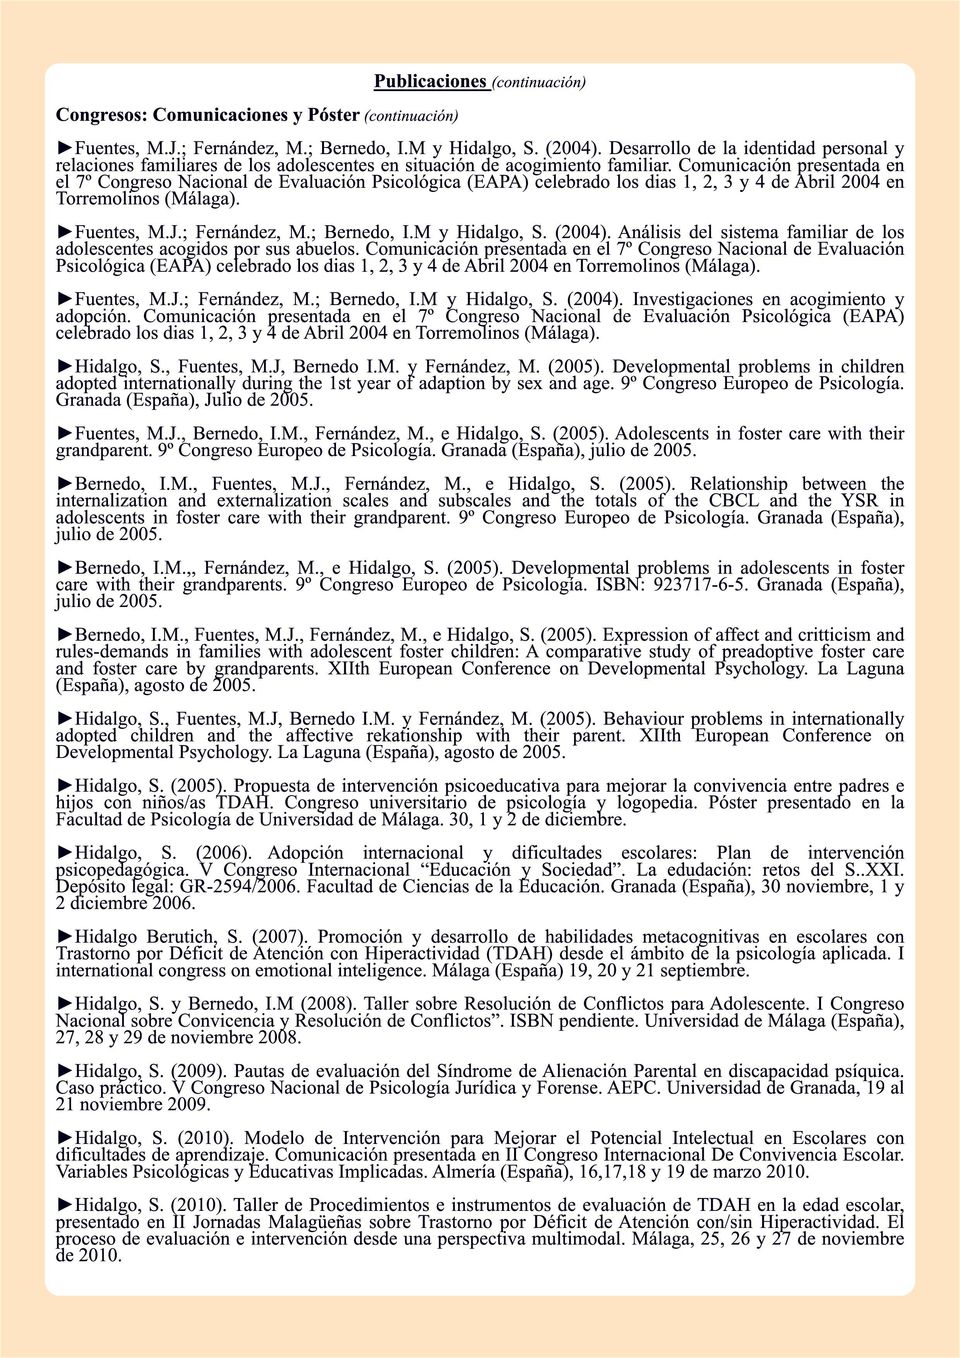 Comunicación presentada en el 7º Congreso Nacional de Evaluación Psicológica (EAPA) celebrado los dias 1, 2, 3 y 4 de Abril 2004 en Torremolinos (Málaga). Fuentes, M.J.; Fernández, M.; Bernedo, I.